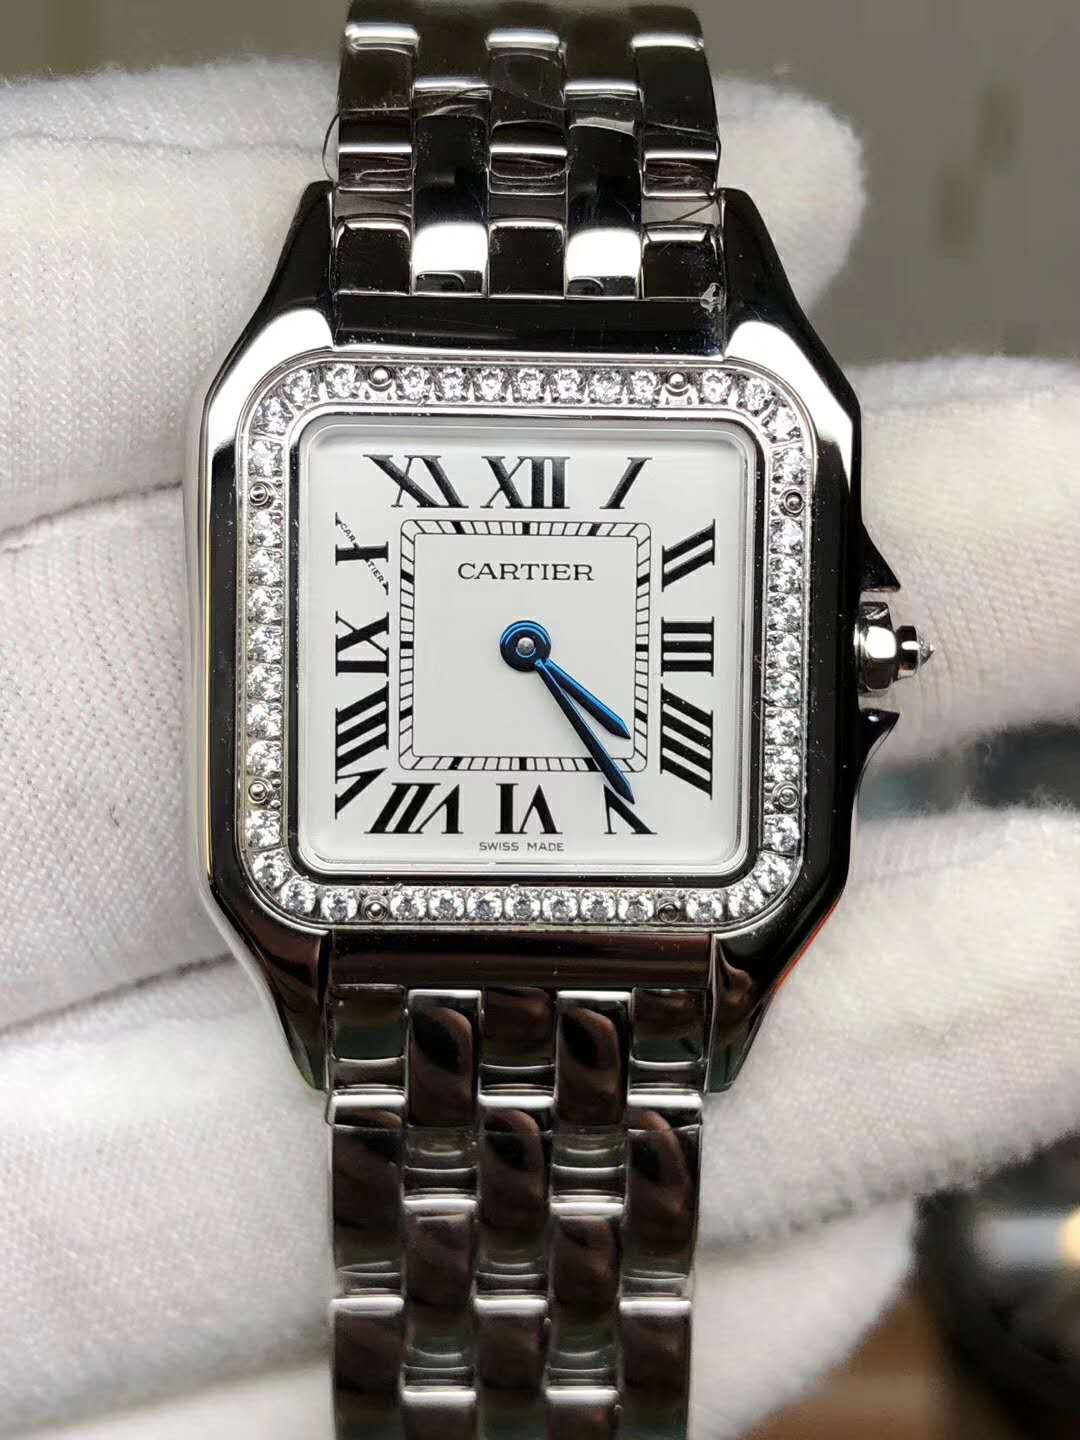 Buy A Cartier Watch - Masha Kalila